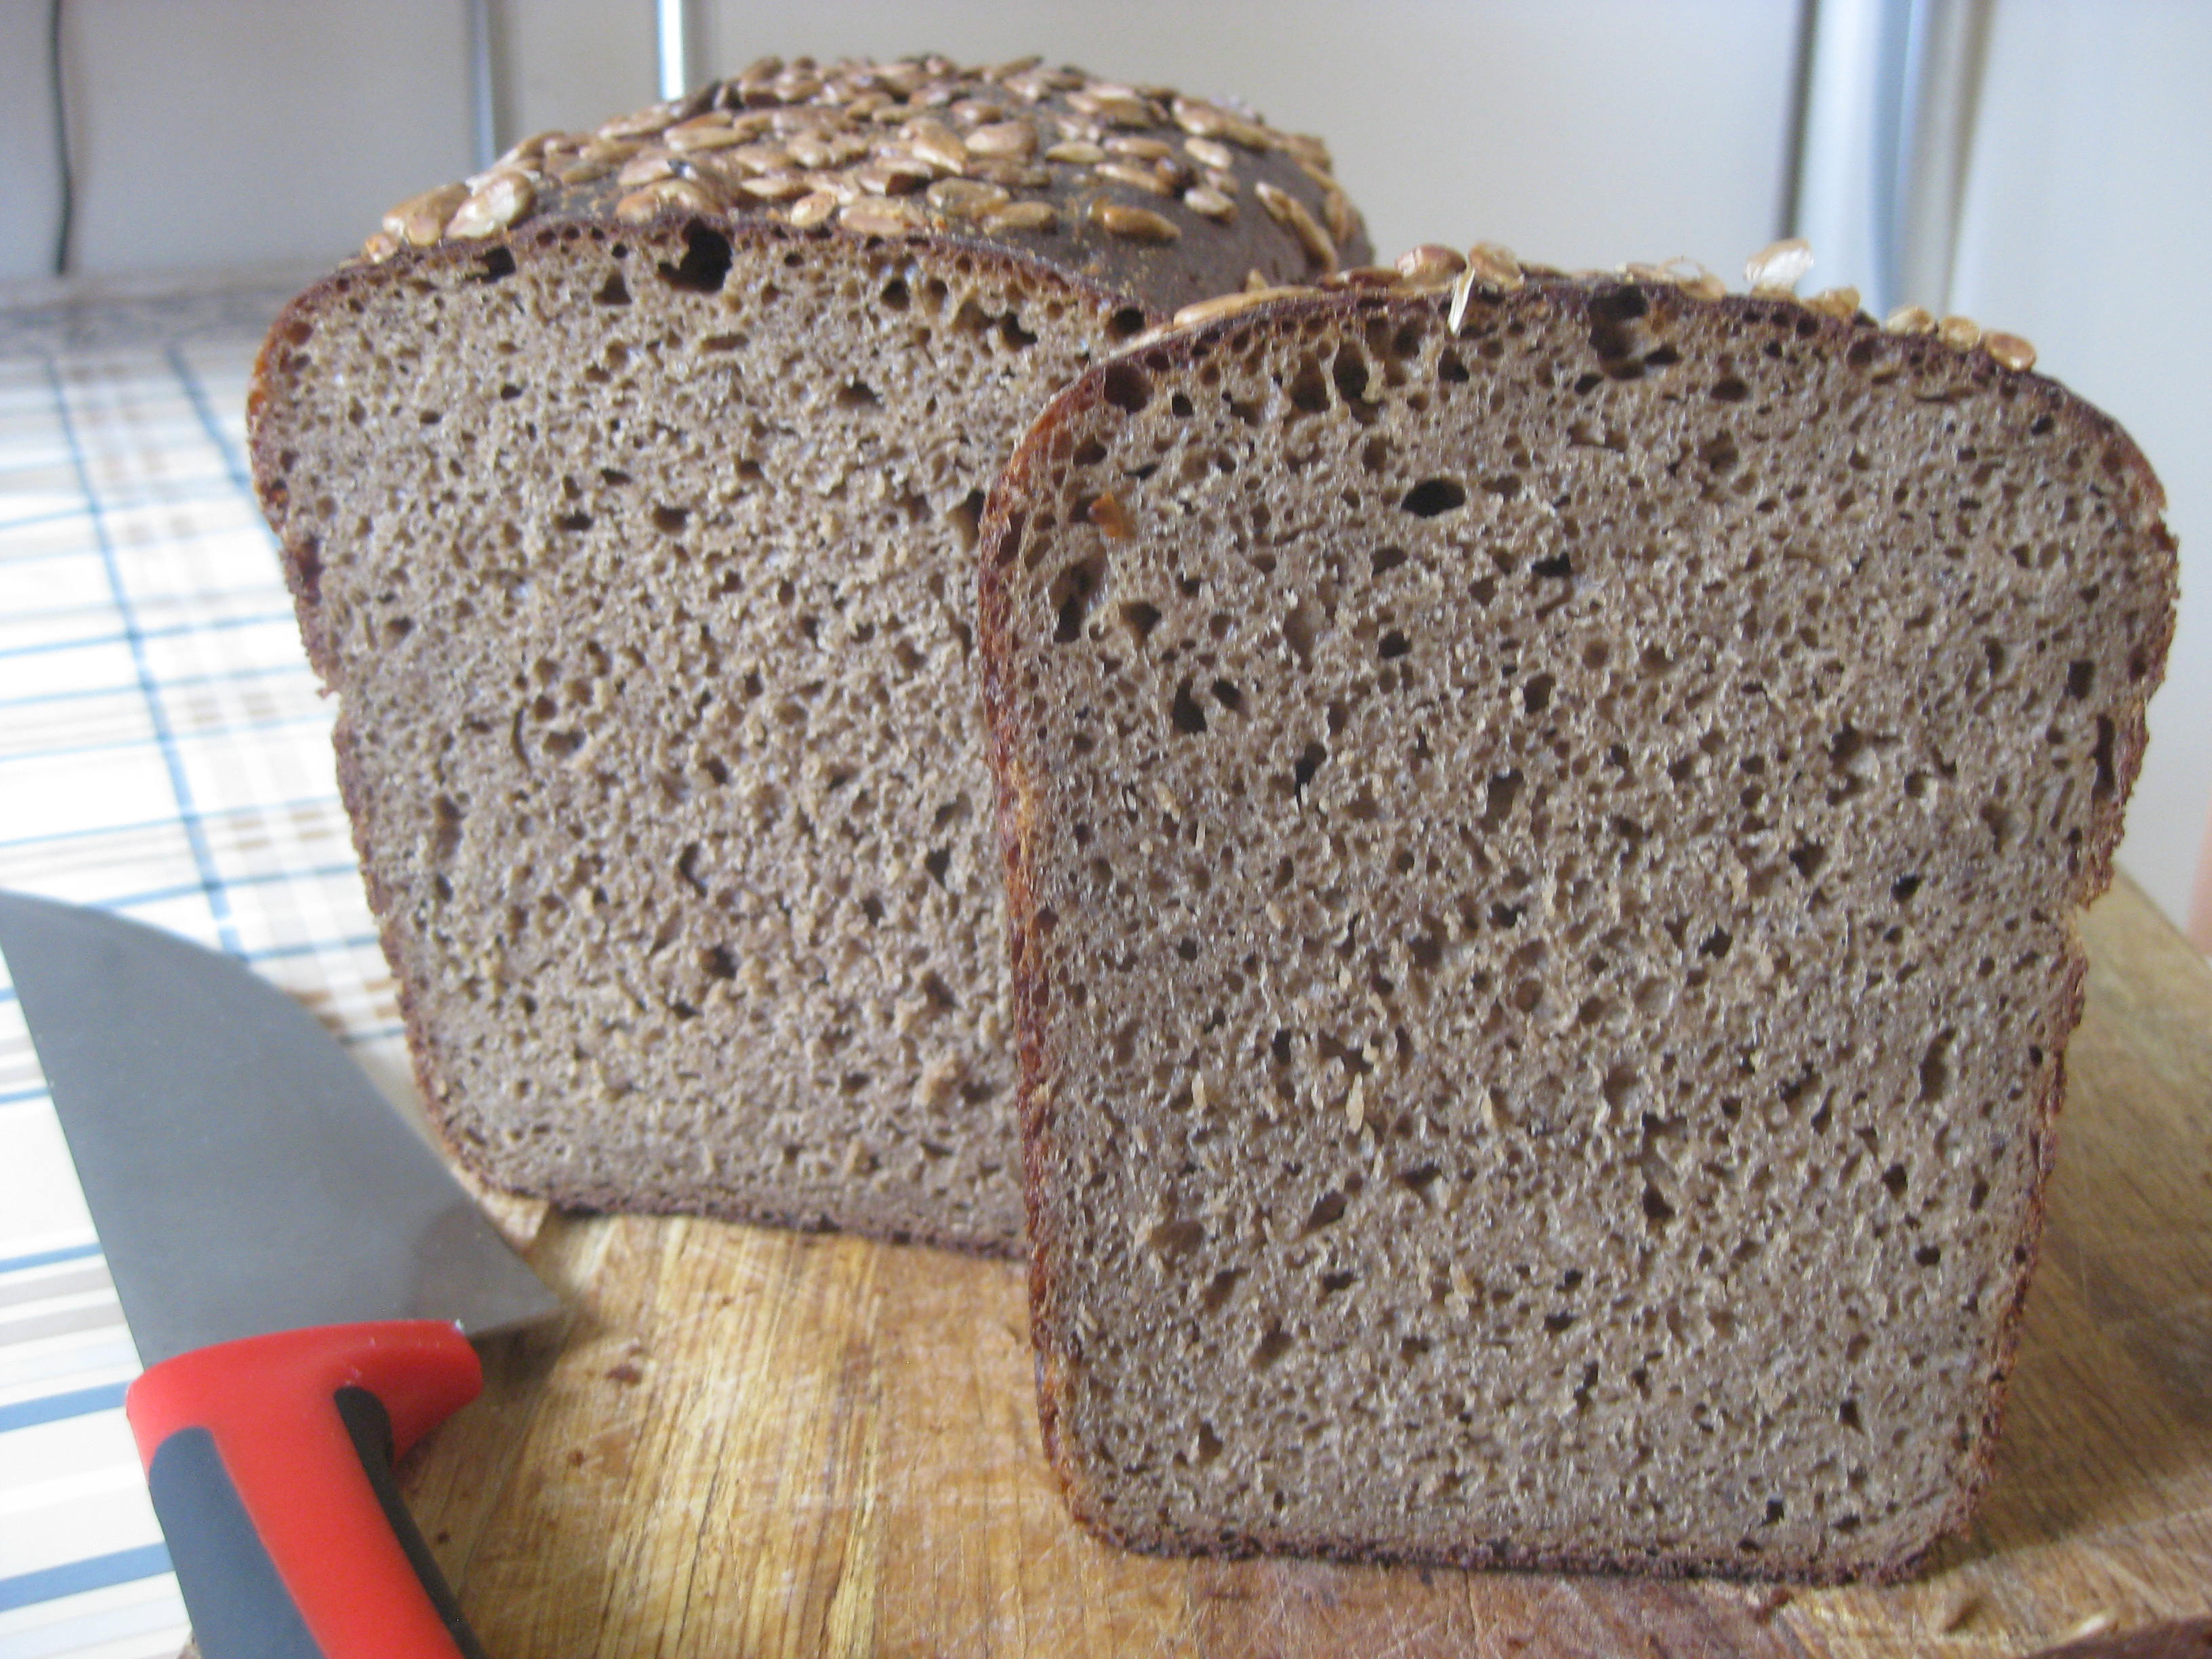 Chleb żytnio-pszenny na bazie rosyjskiej